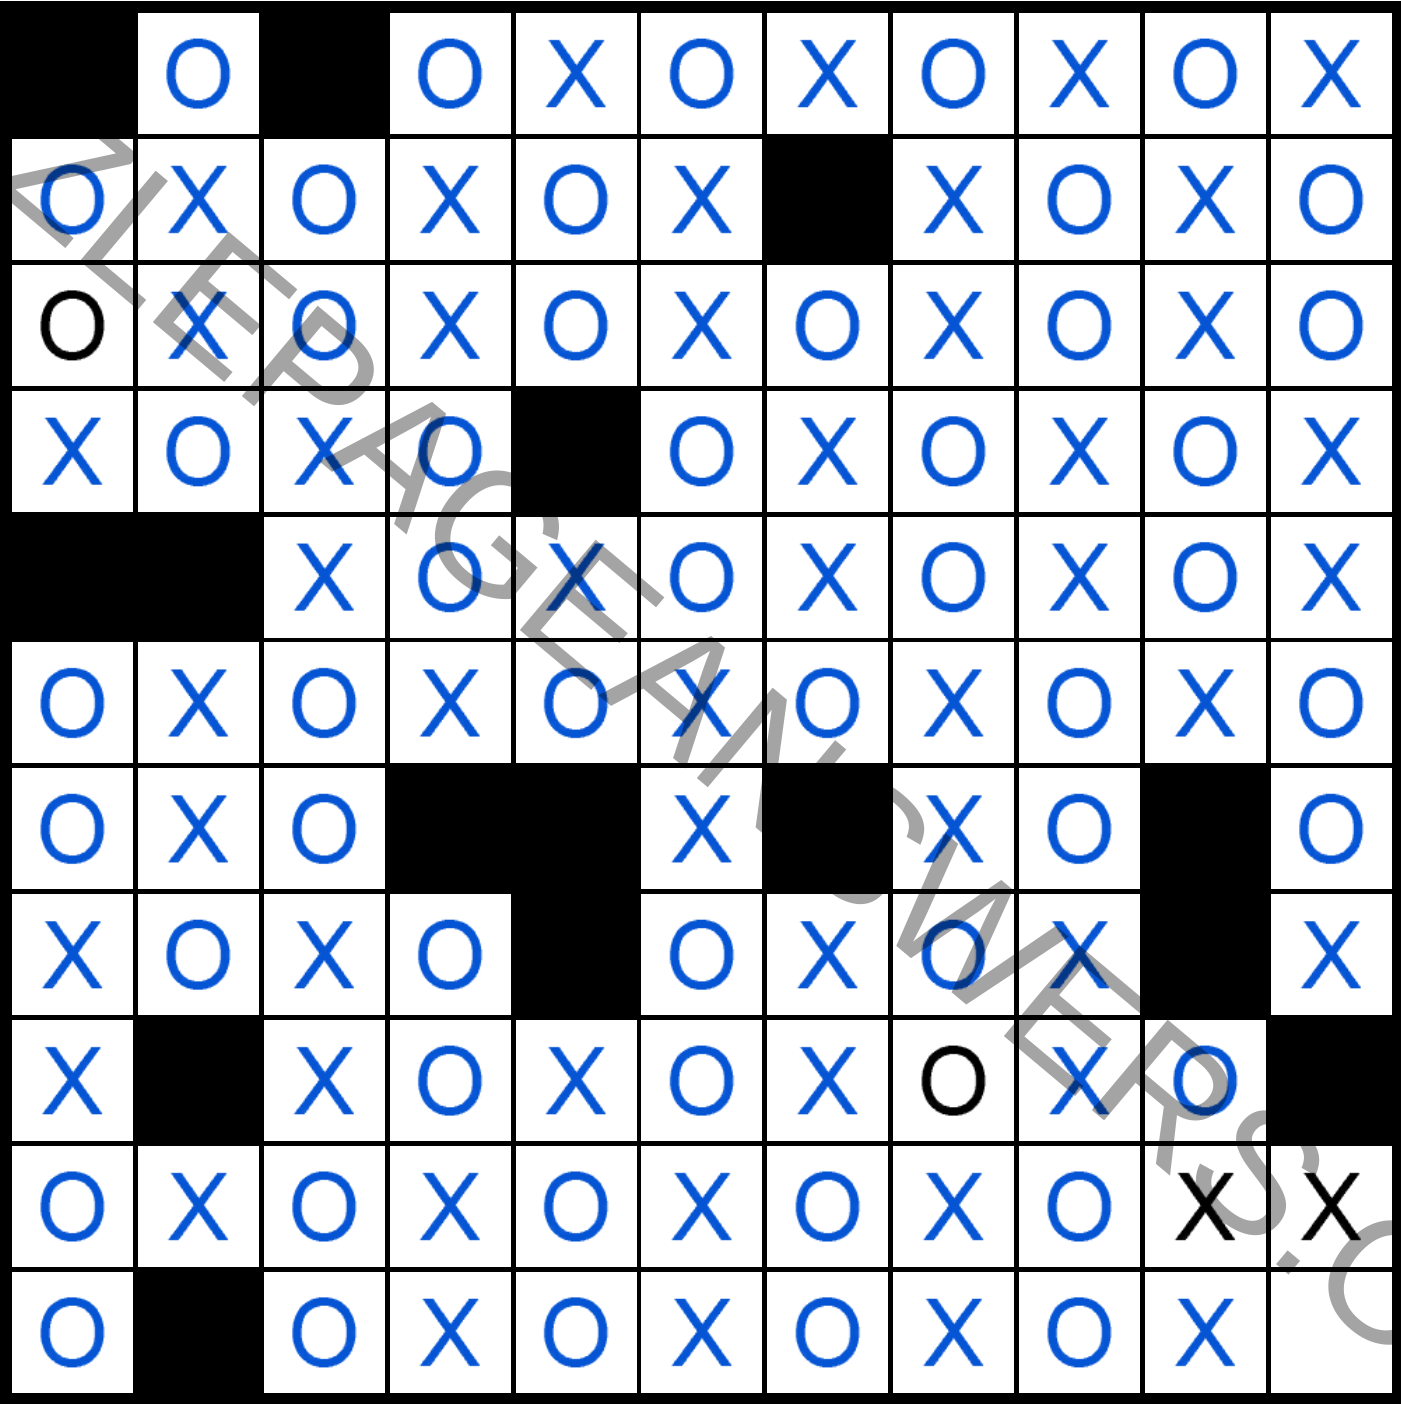 composer edvard crossword clue